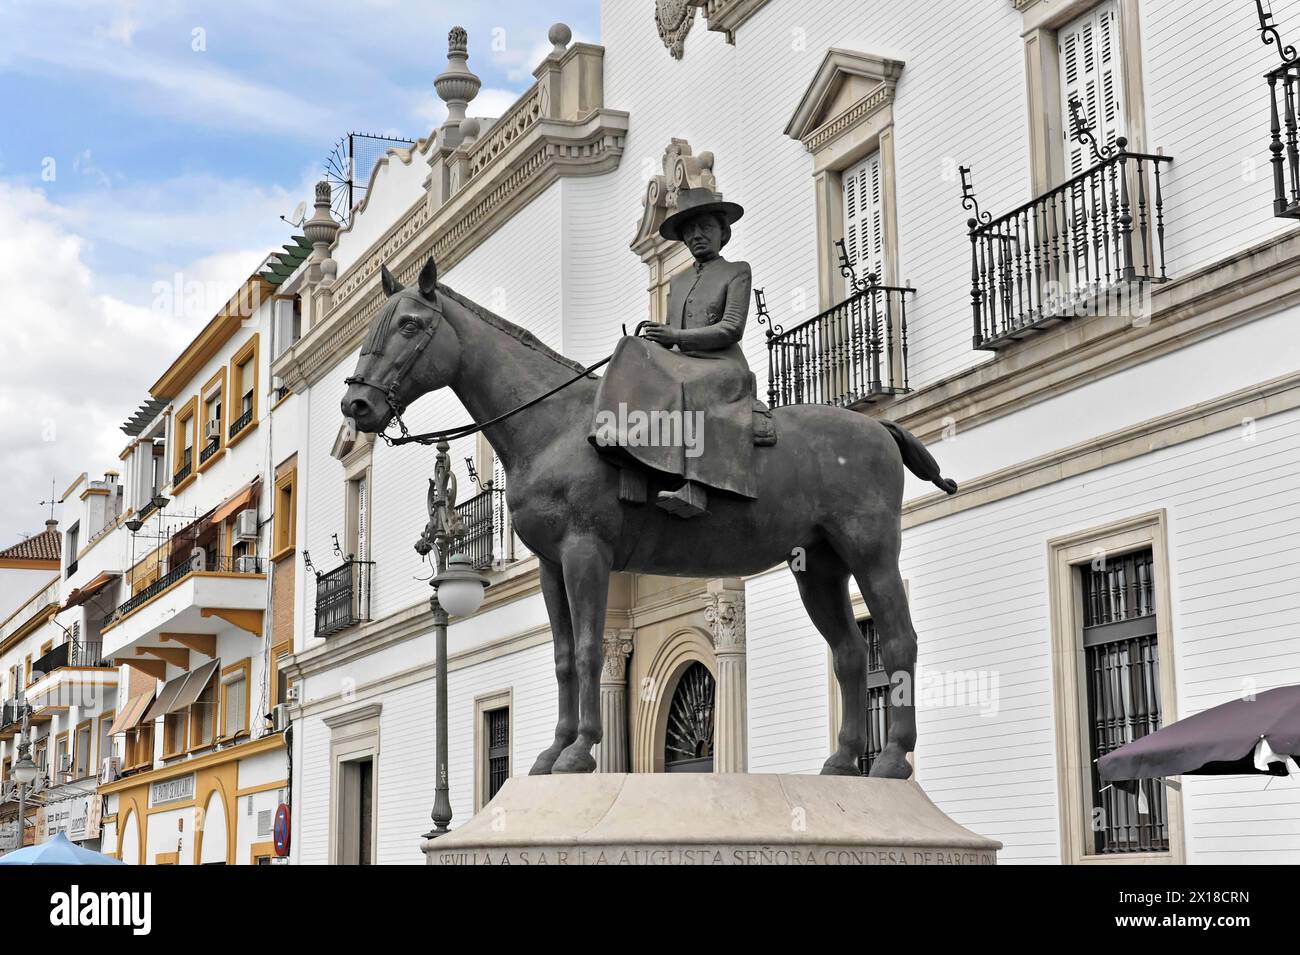 Sevilla, Statue eines Reiters auf einem Pferd vor städtischen Gebäuden und blauem Himmel, Sevilla, Andalusien, Spanien Stockfoto